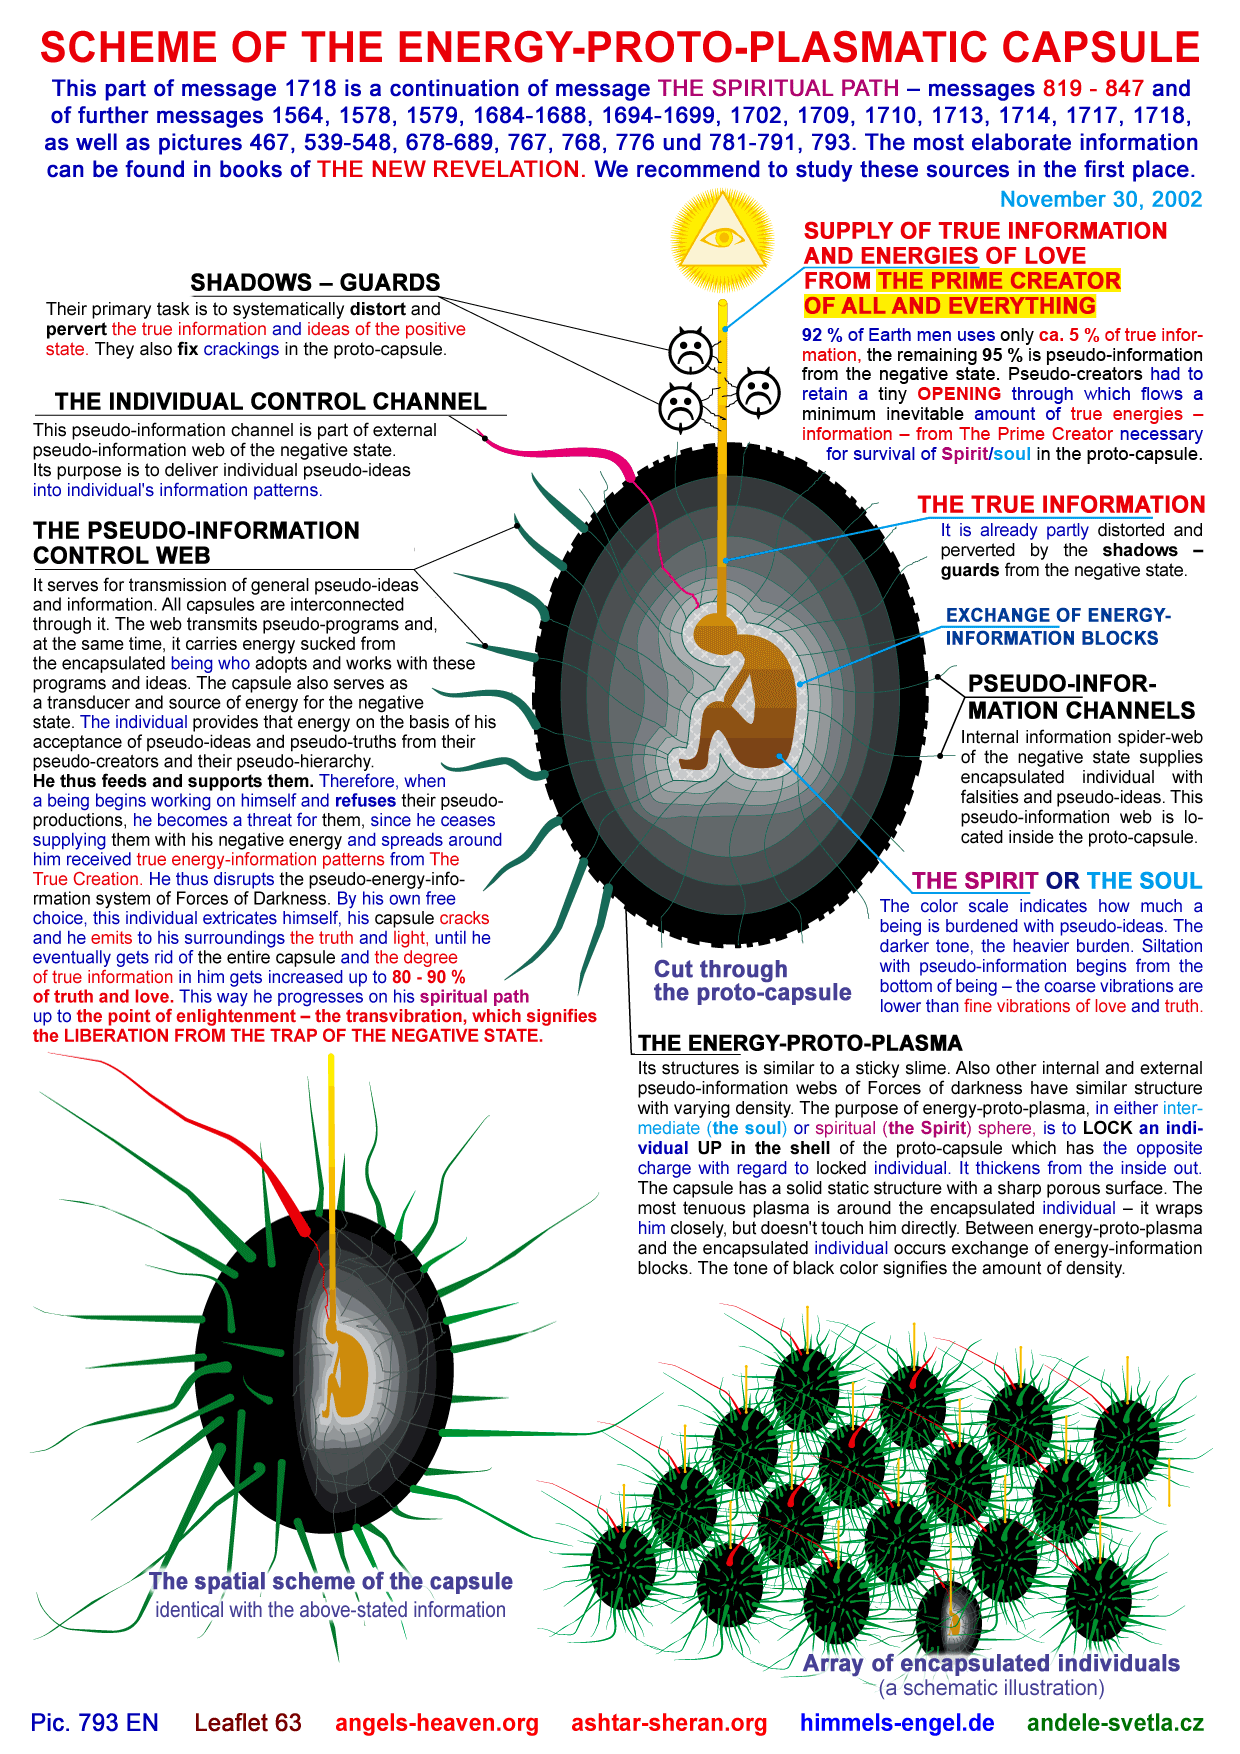 Scheme of the energy-proto-plasmatic capsule